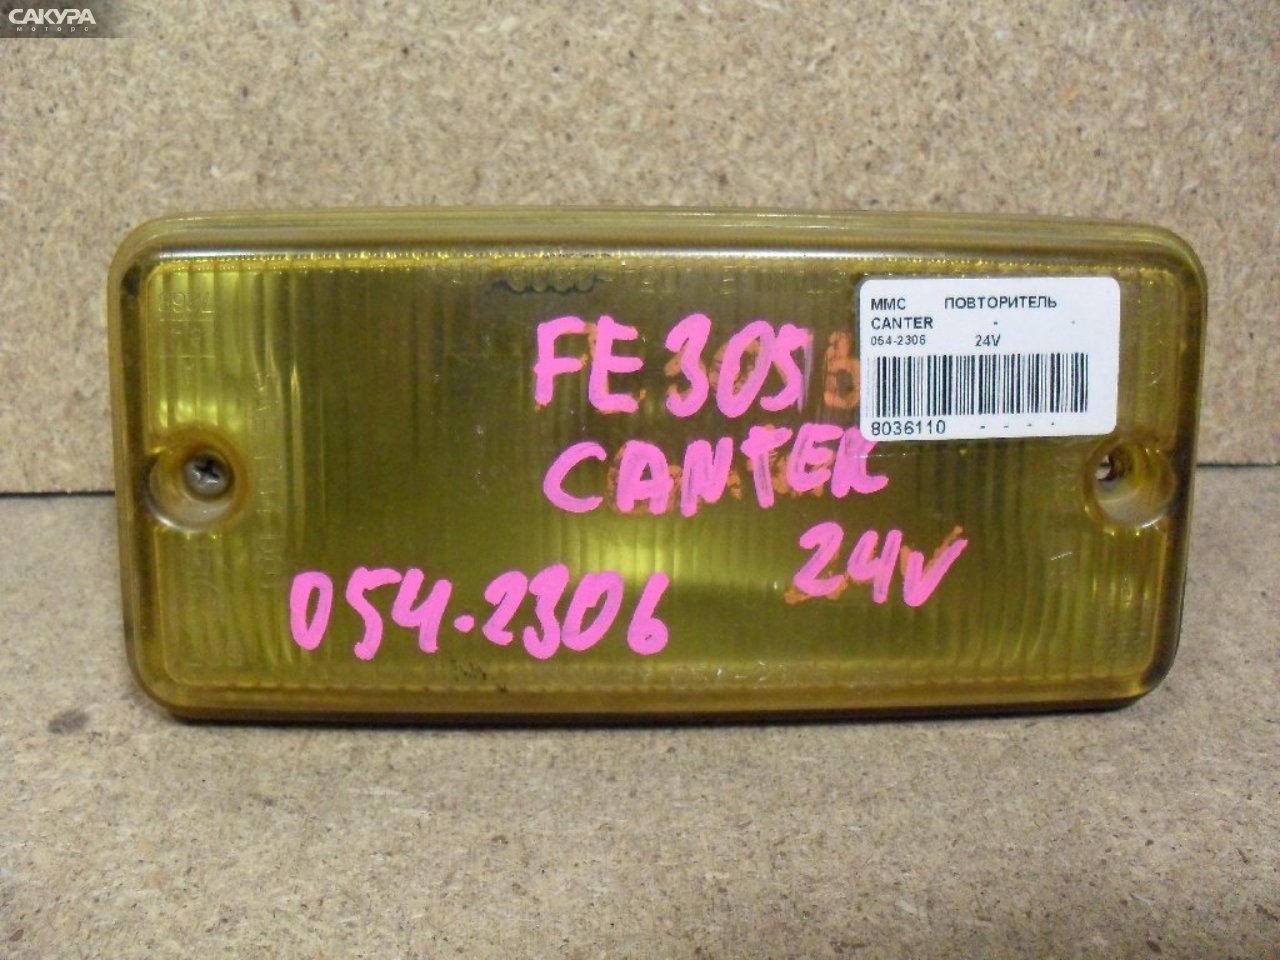 Повторитель Mitsubishi Canter FE305B 054-2306: купить в Сакура Абакан.